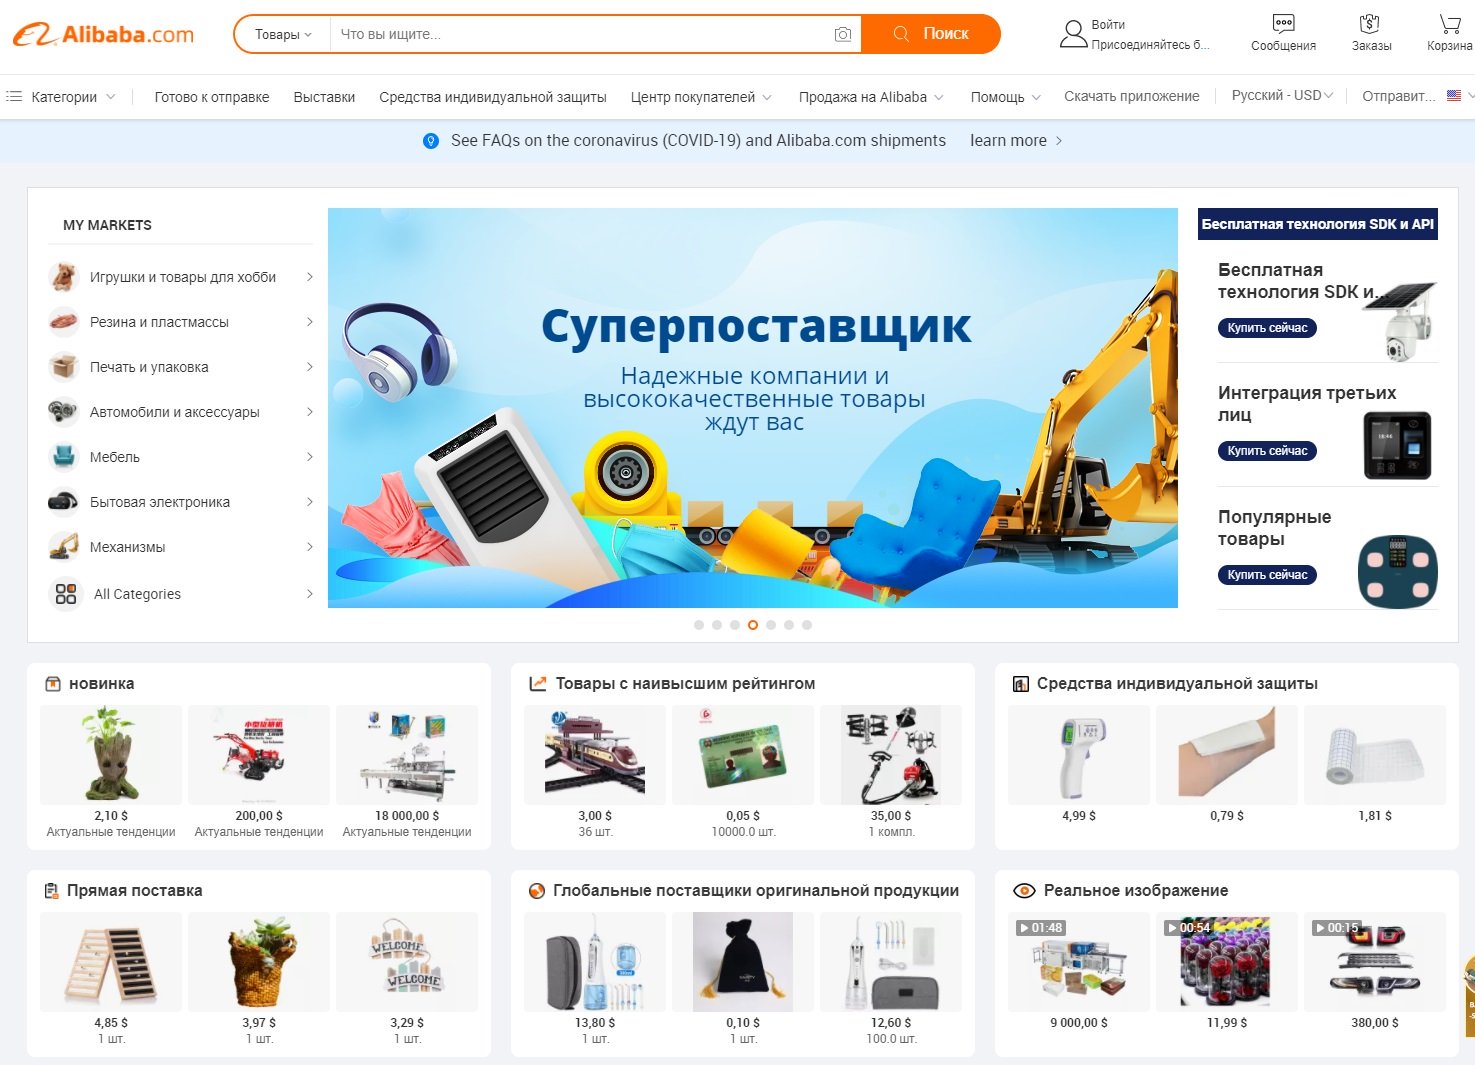 Как правильно заказать товар на Алибаба.com с доставкой в Россию - наша схема работы